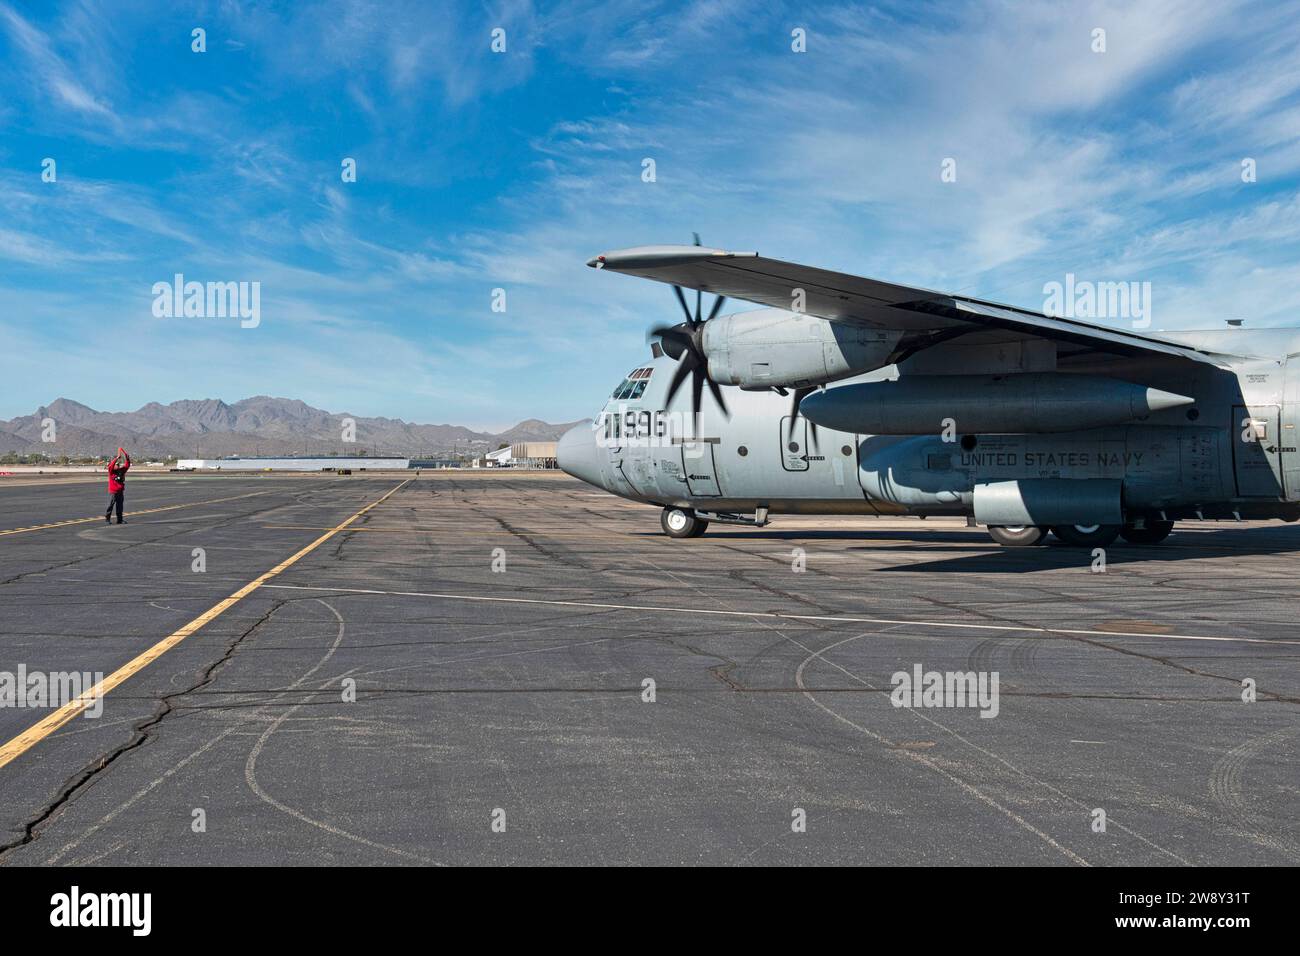 C130 della Marina degli Stati Uniti d'America davanti alla Torre di controllo presso l'aeroporto internazionale di Tucson in Arizona Foto Stock